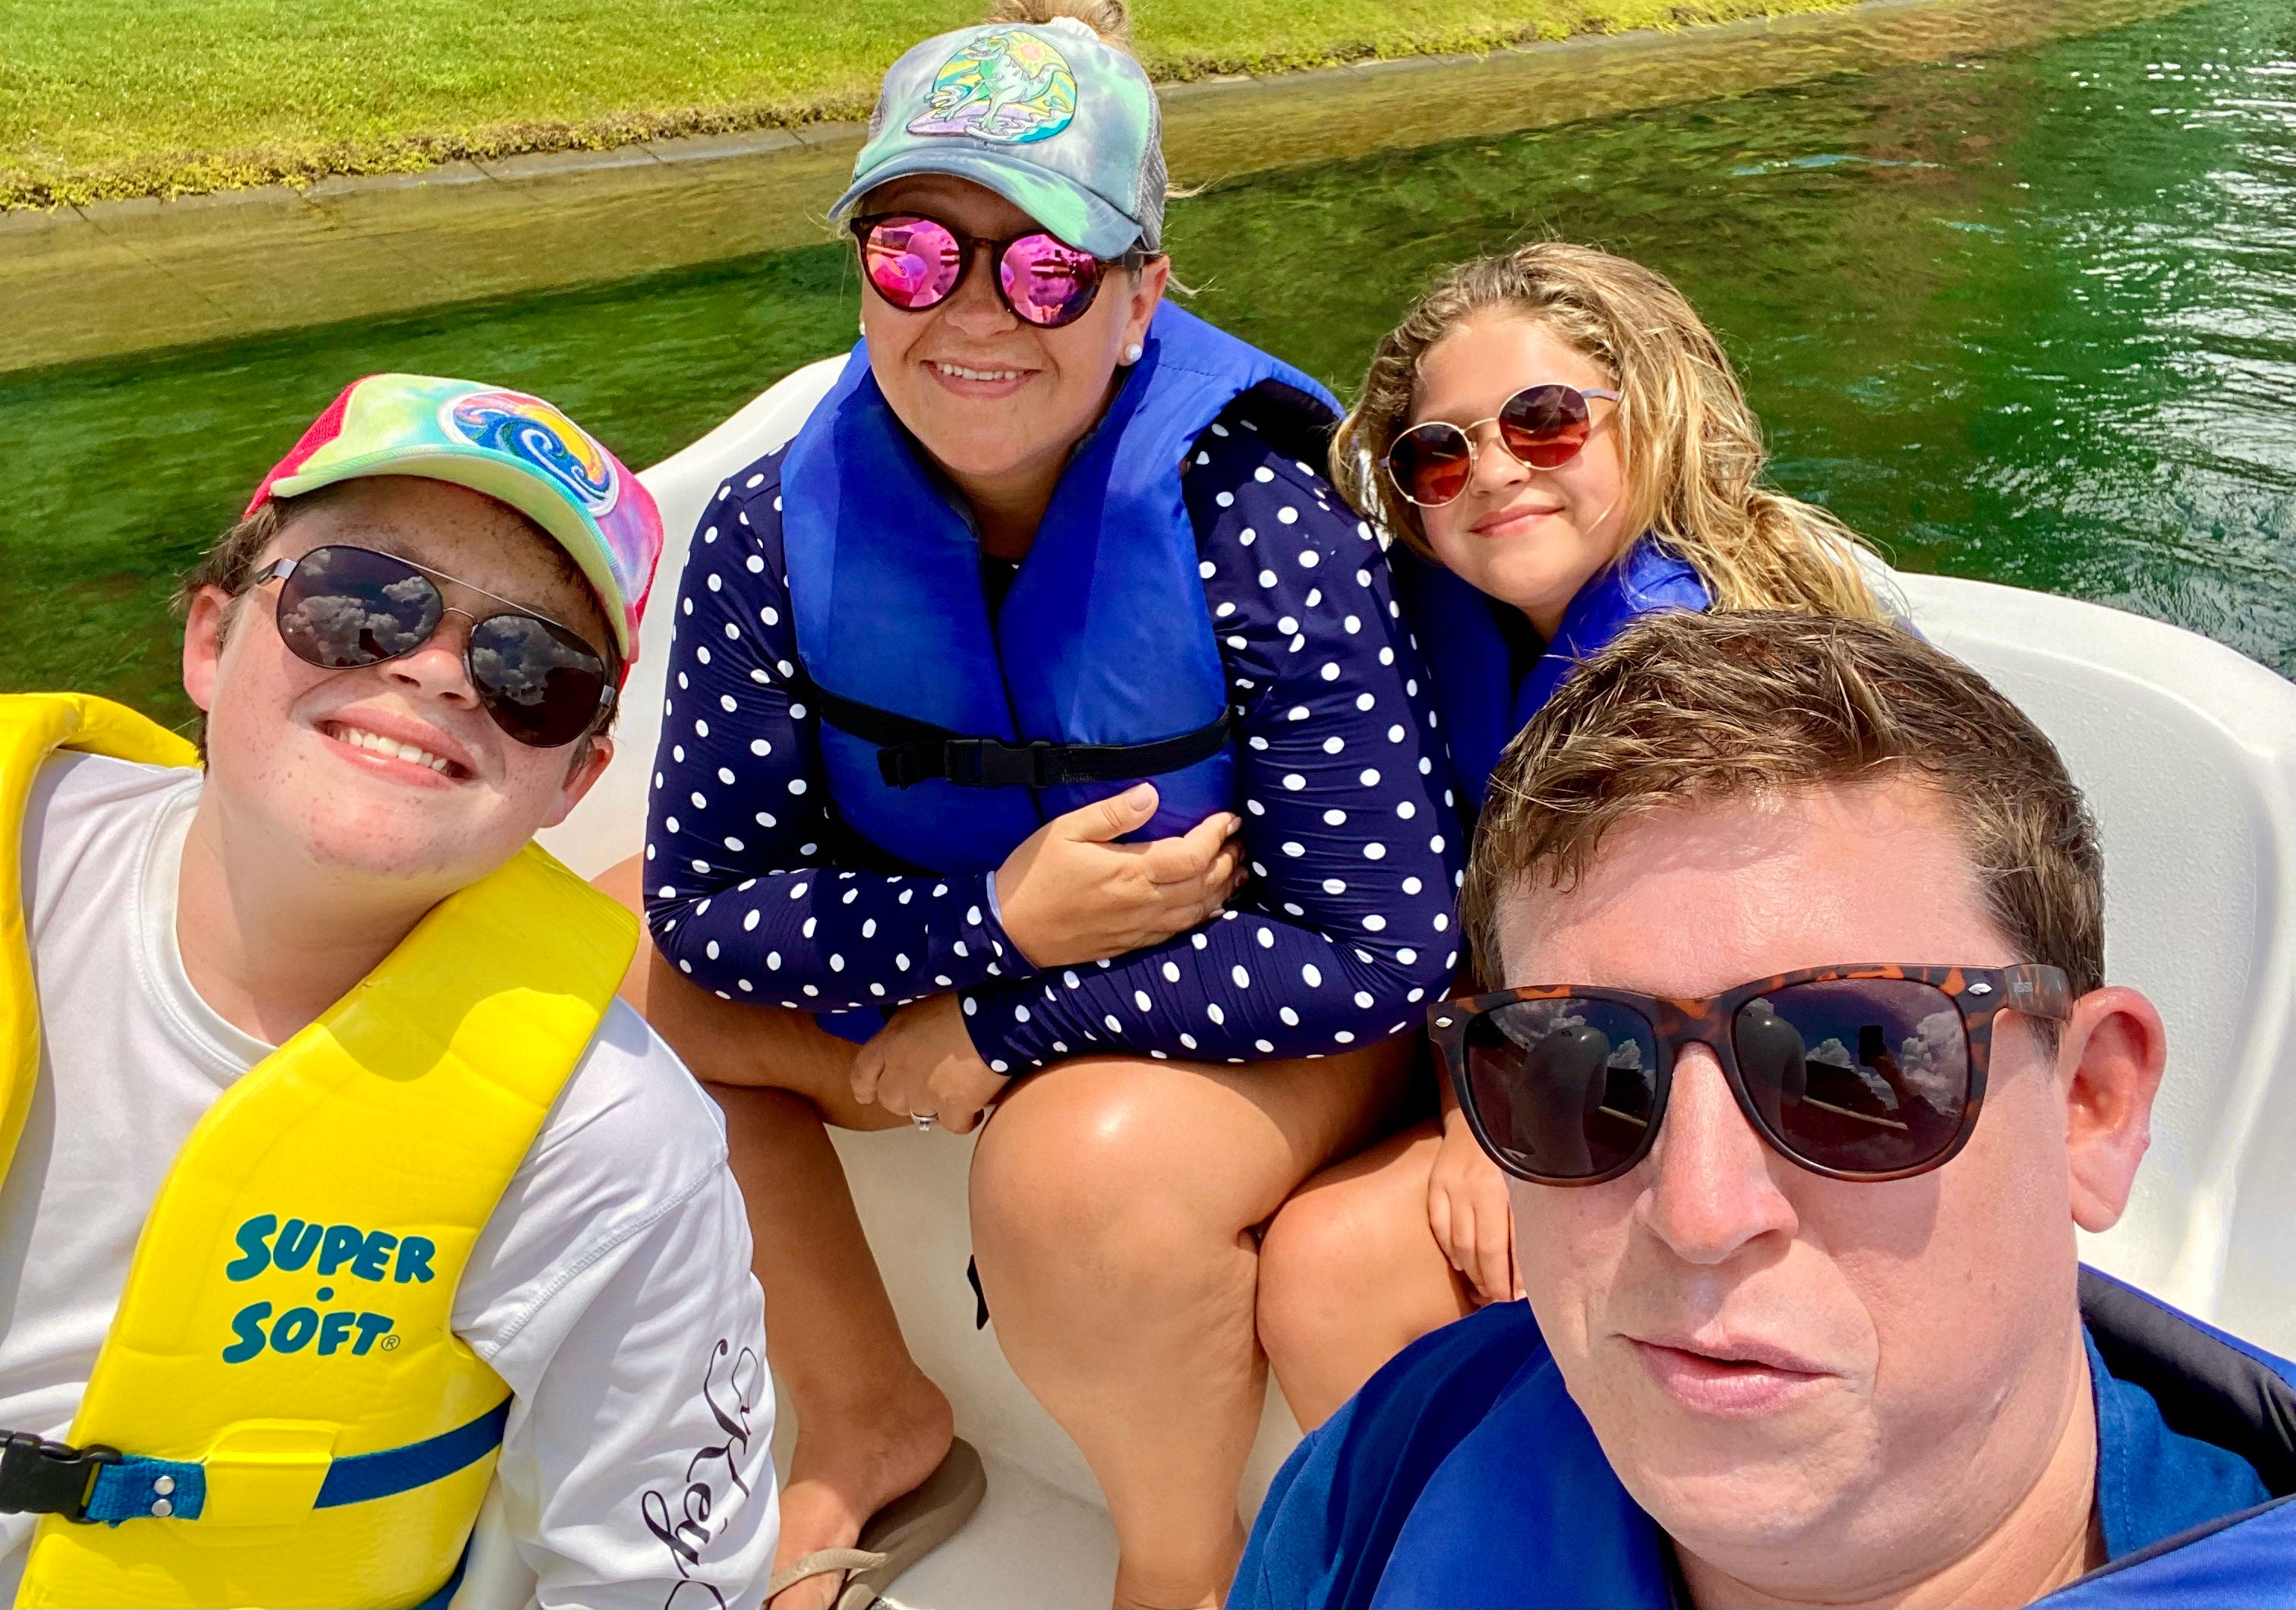 Terri Peters, ihre beiden Kinder und ihr Ehemann tragen Schwimmwesten auf einem Boot in Florida